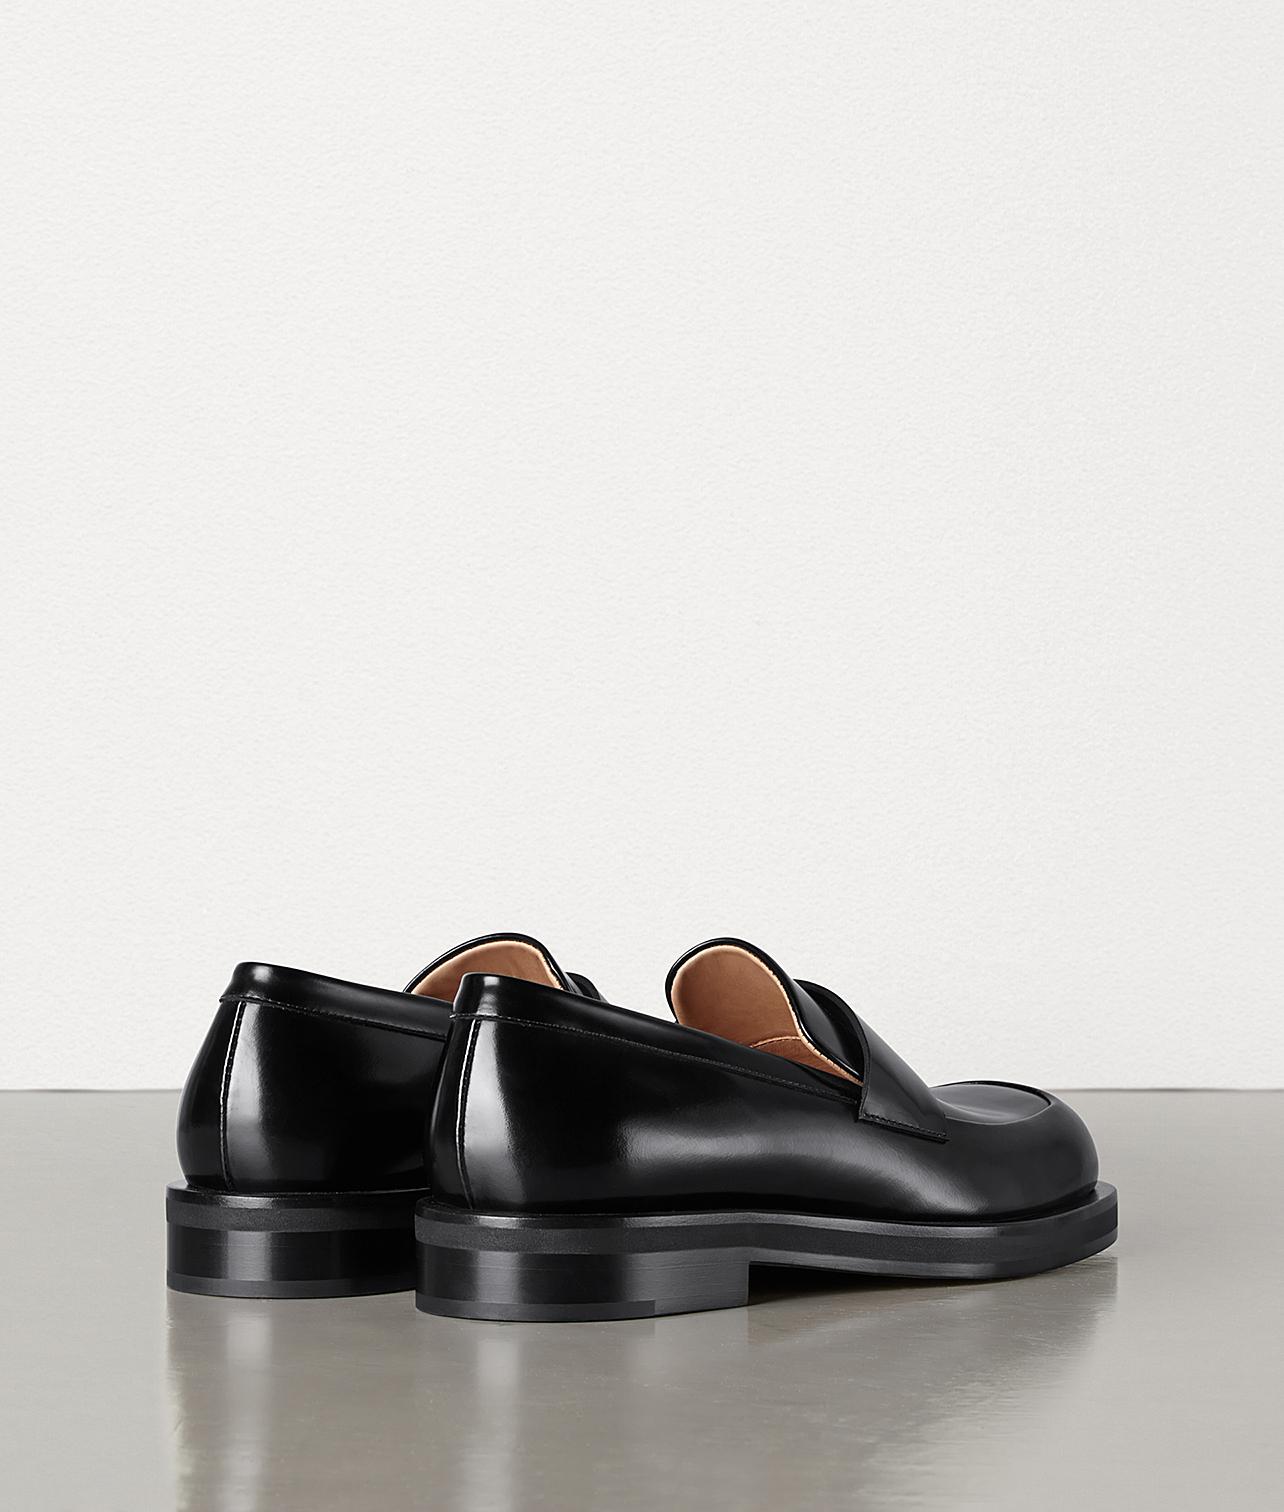 Bottega Veneta Loafers in Nero (Black) for Men - Lyst